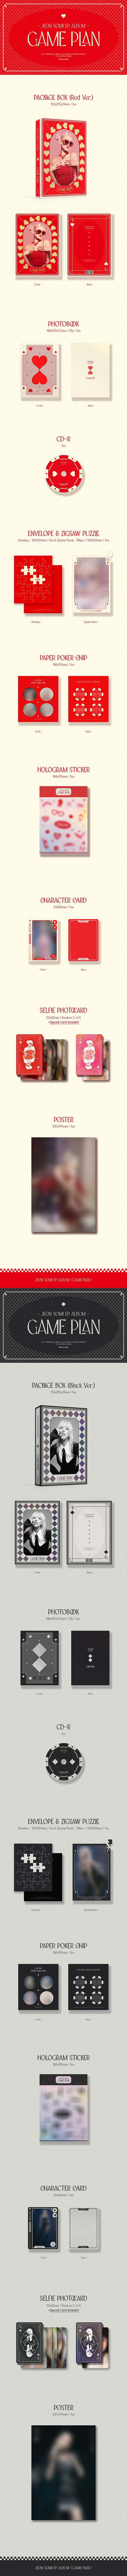 チョン・ソミ - GAME PLAN (EP Album) 写真集 Ver. 2セット